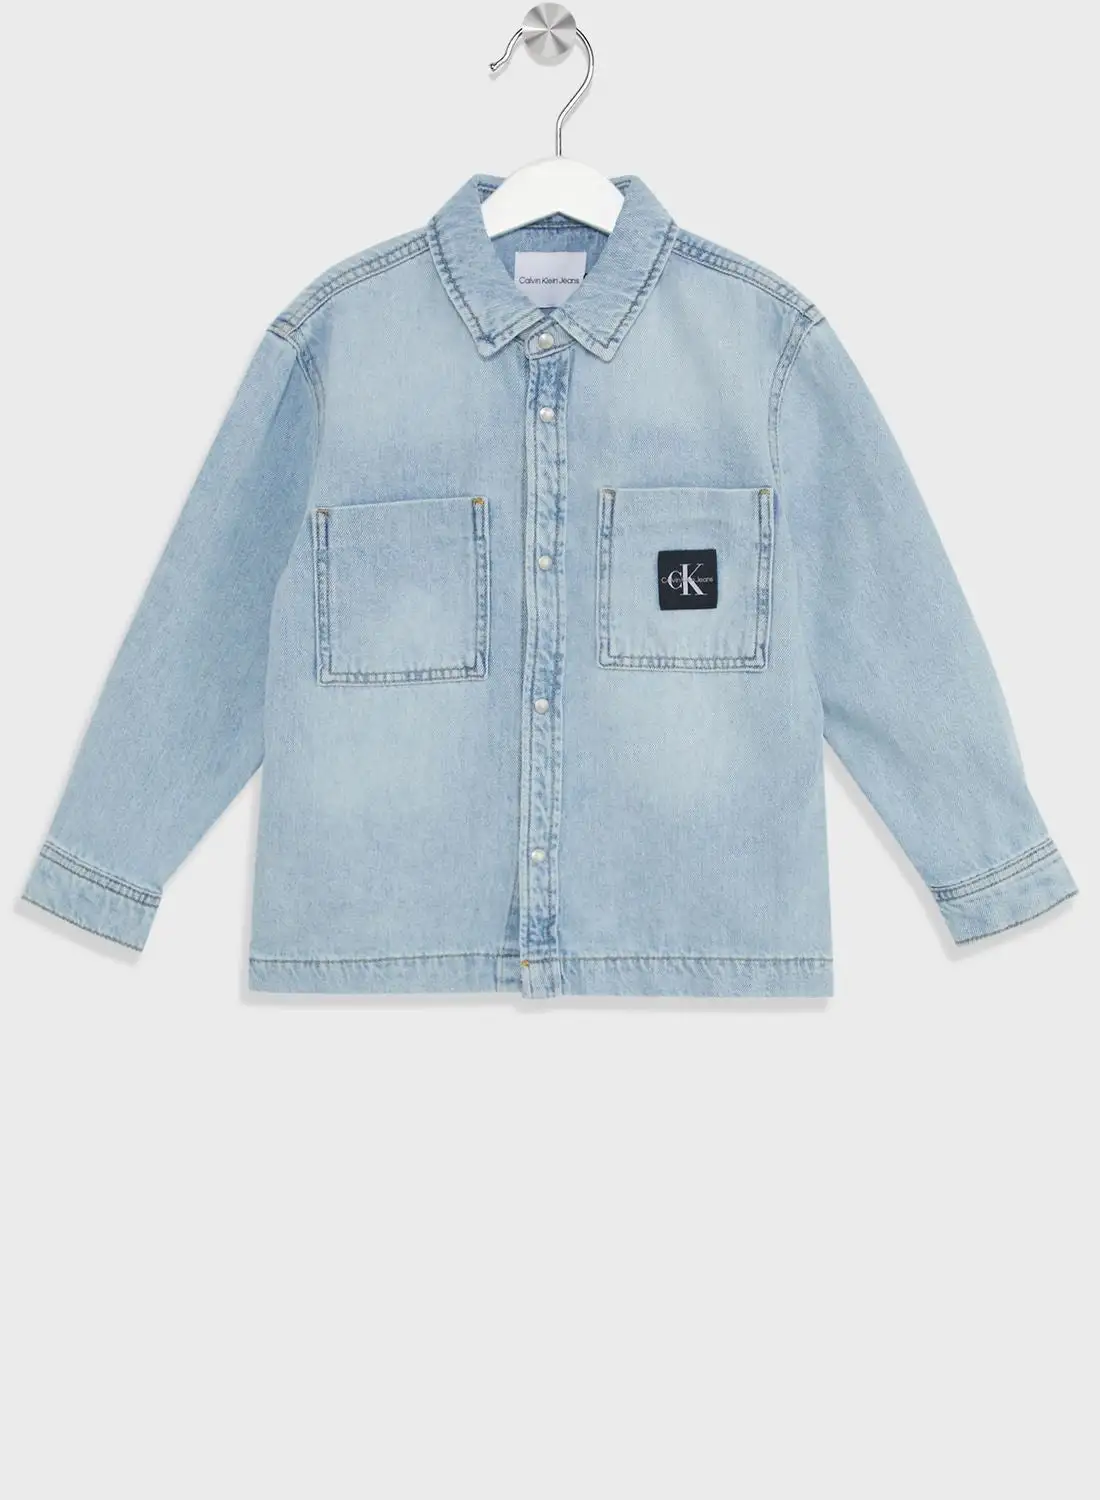 Calvin Klein Jeans Youth Light Wash Denim Jacket